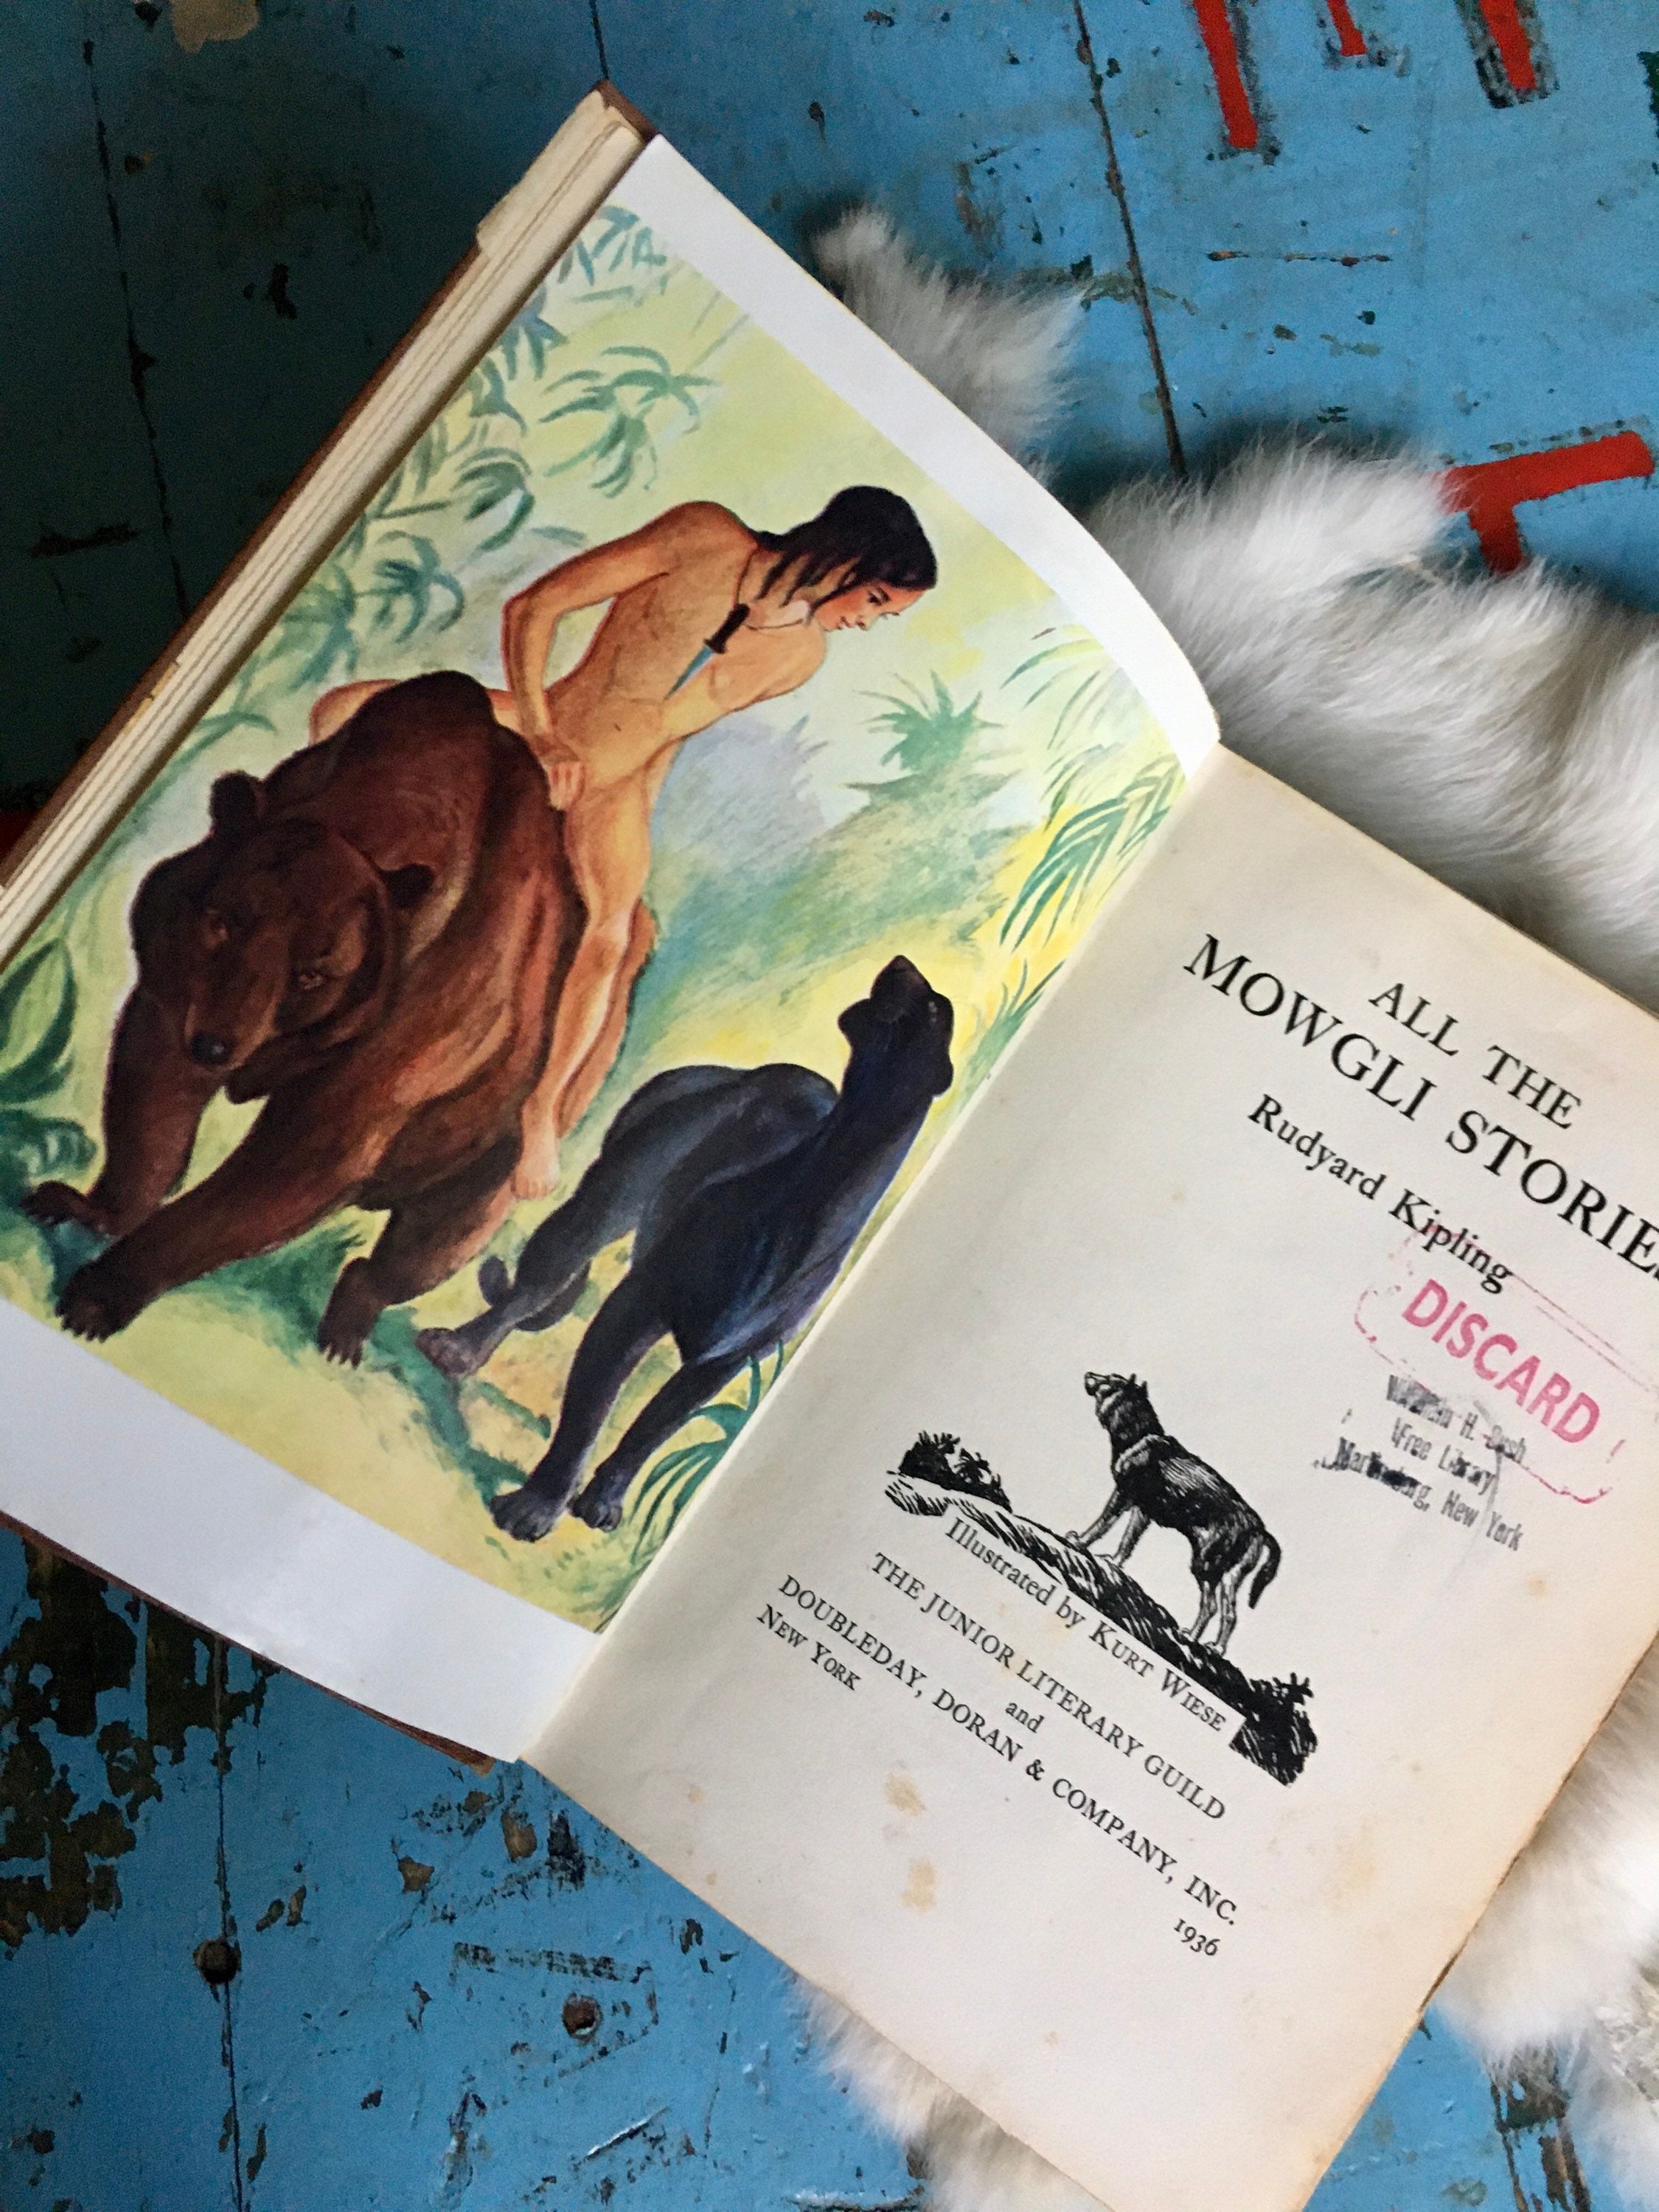 King Louie and Mowgli Canvas Tote Bag Jungle Book Tote 